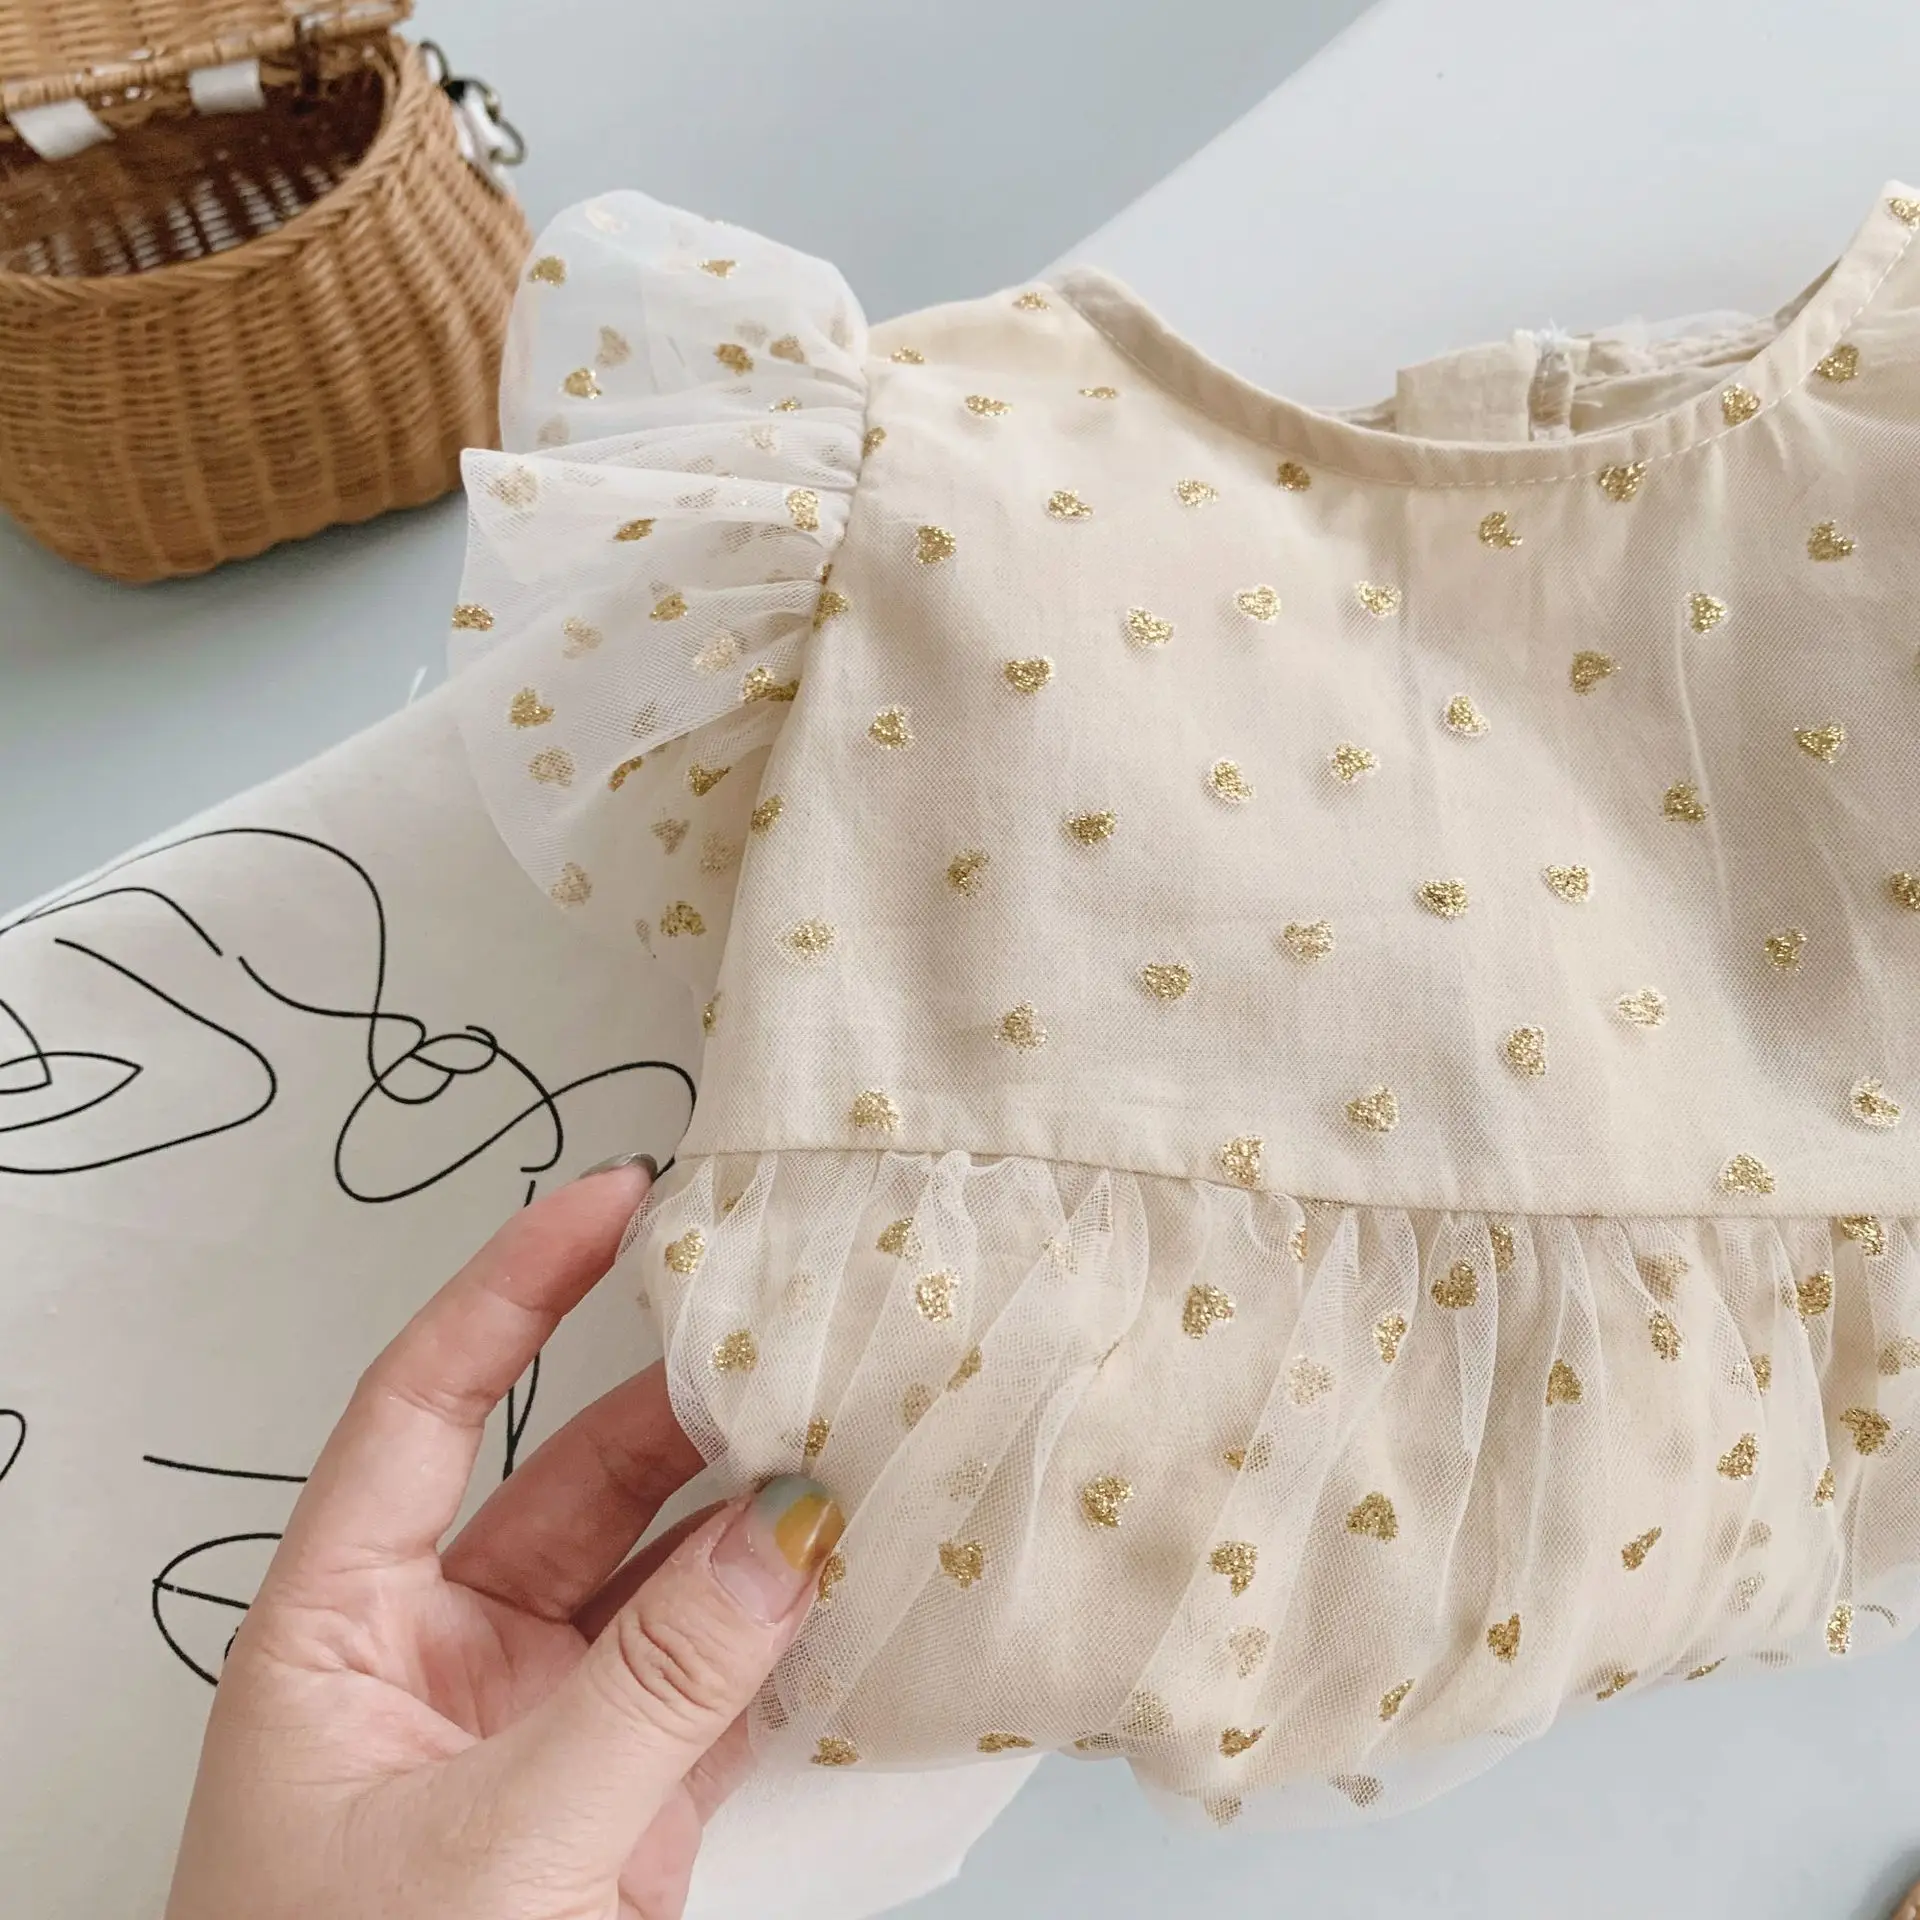 Lohri dress ideas for baby girl – News9Live